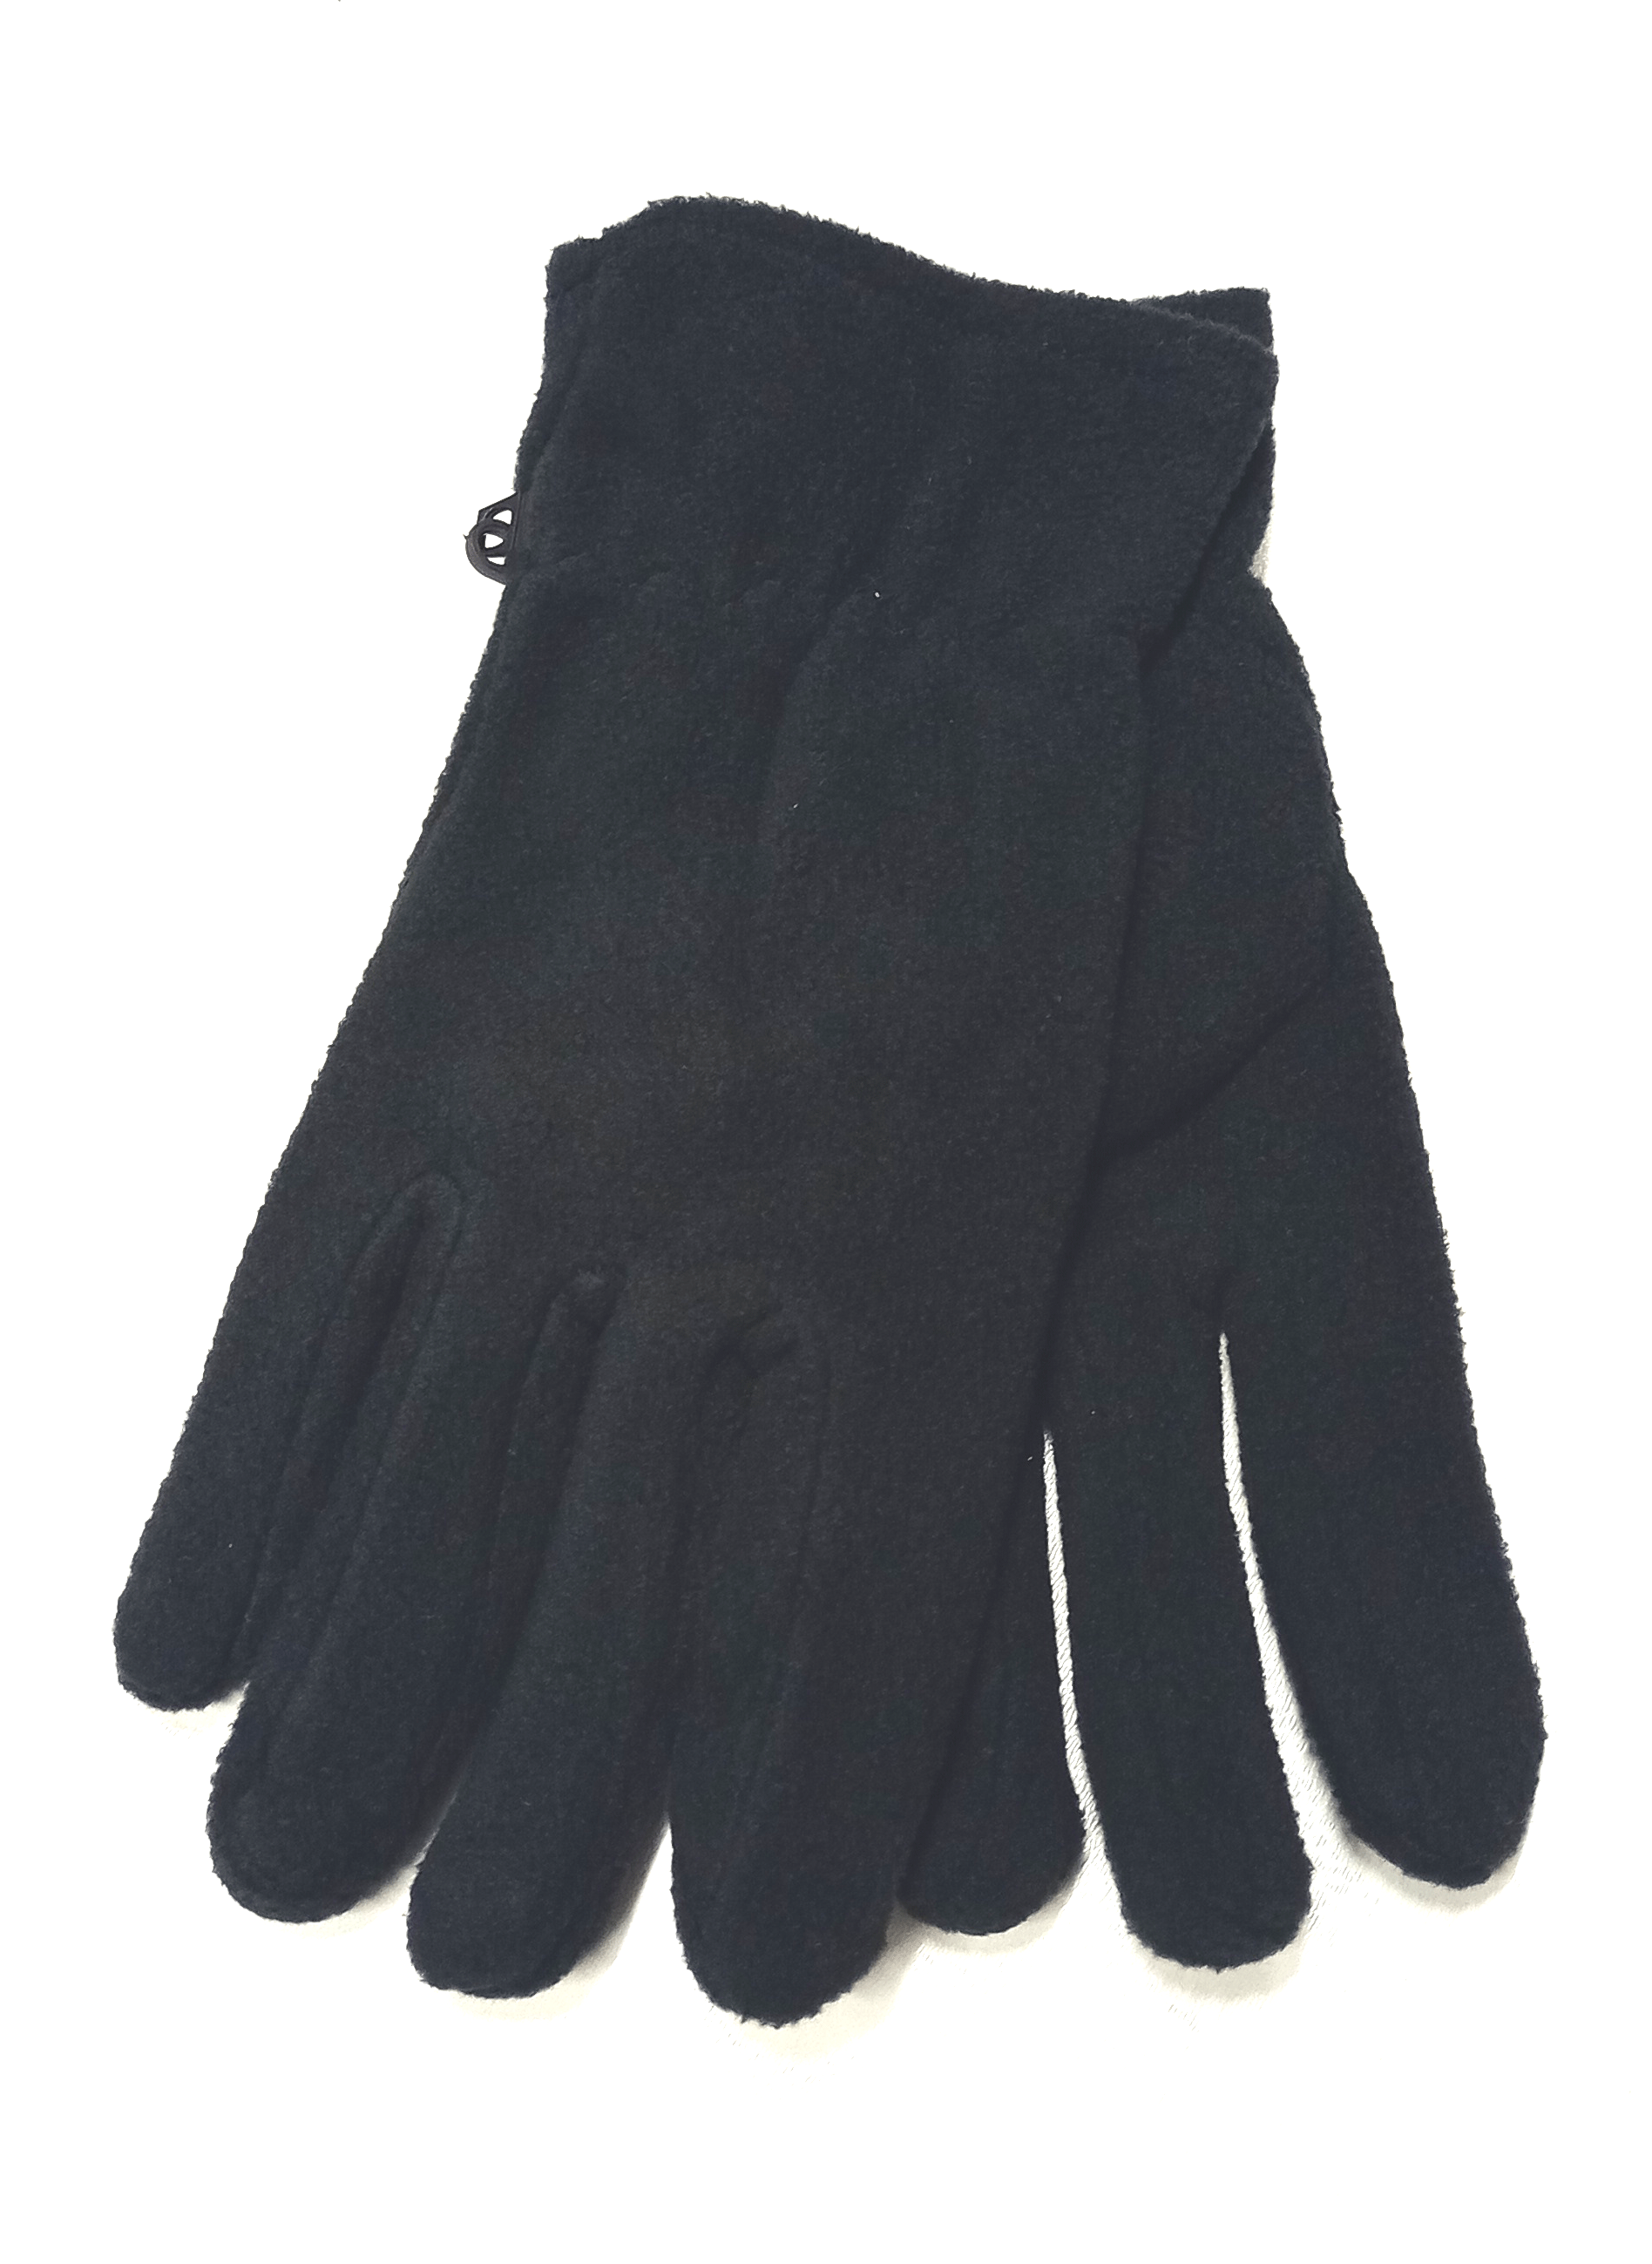 rukavice pánské fleece černé RU 05